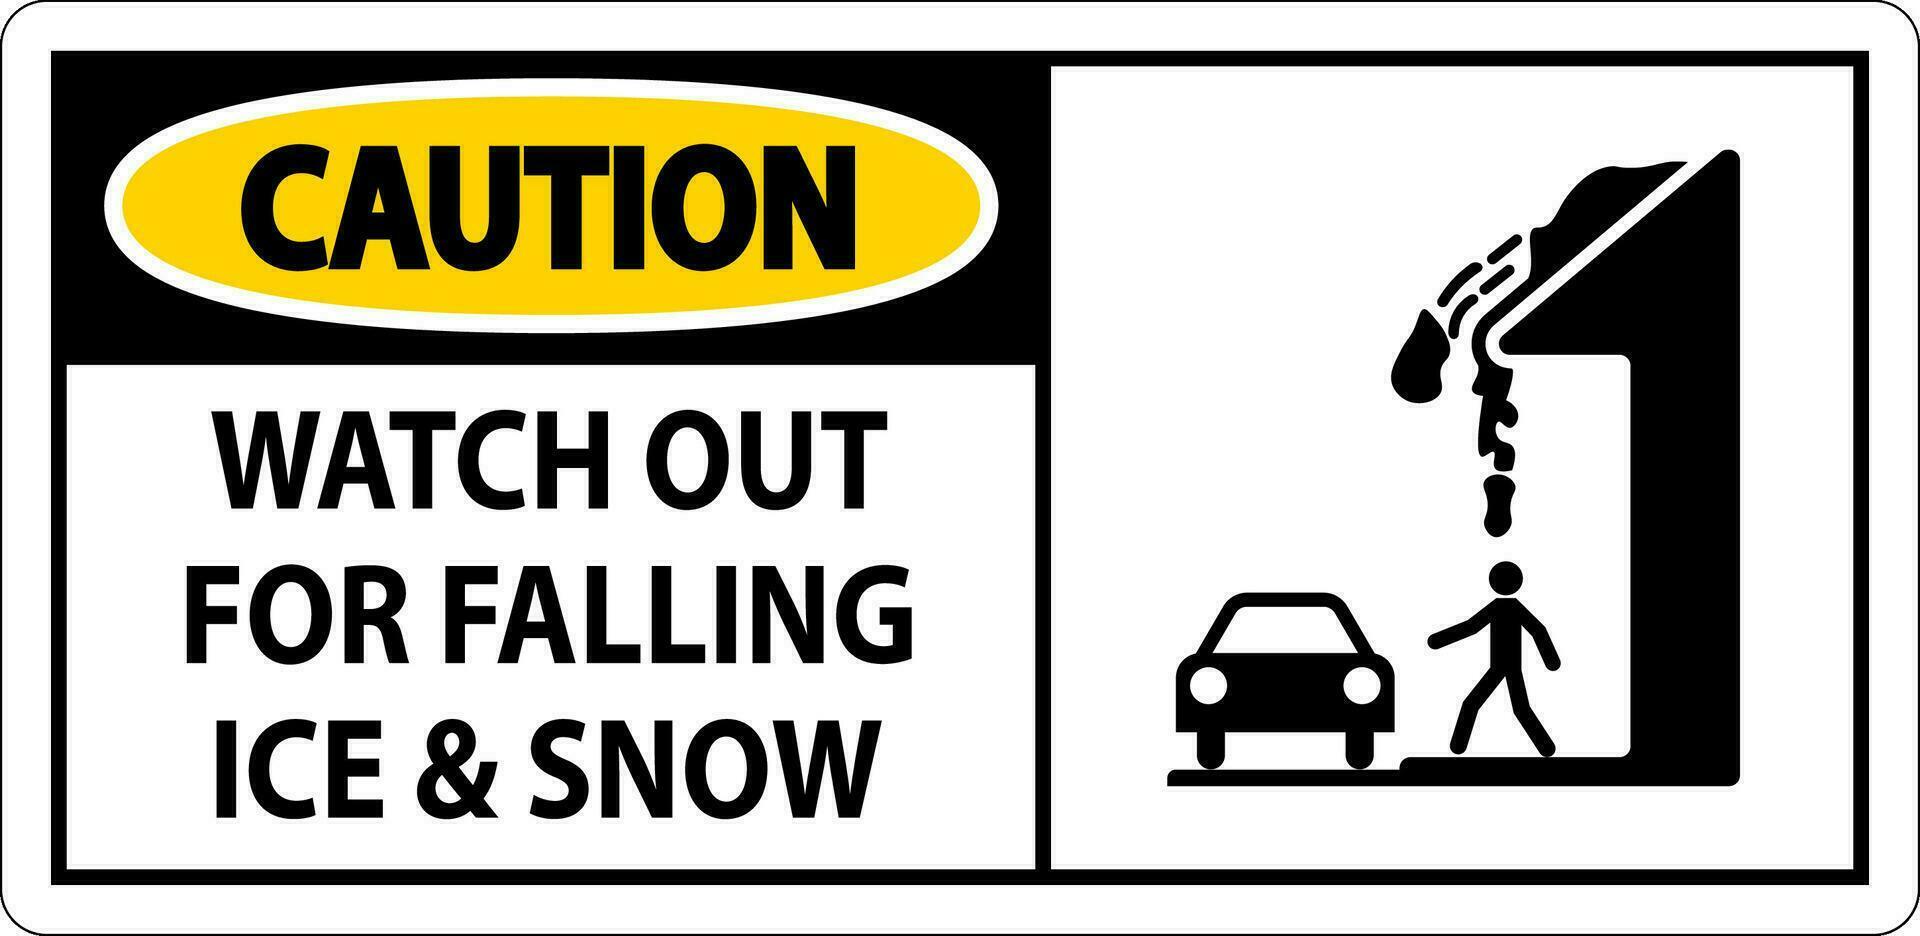 mise en garde signe regarder en dehors pour chute la glace et neige vecteur